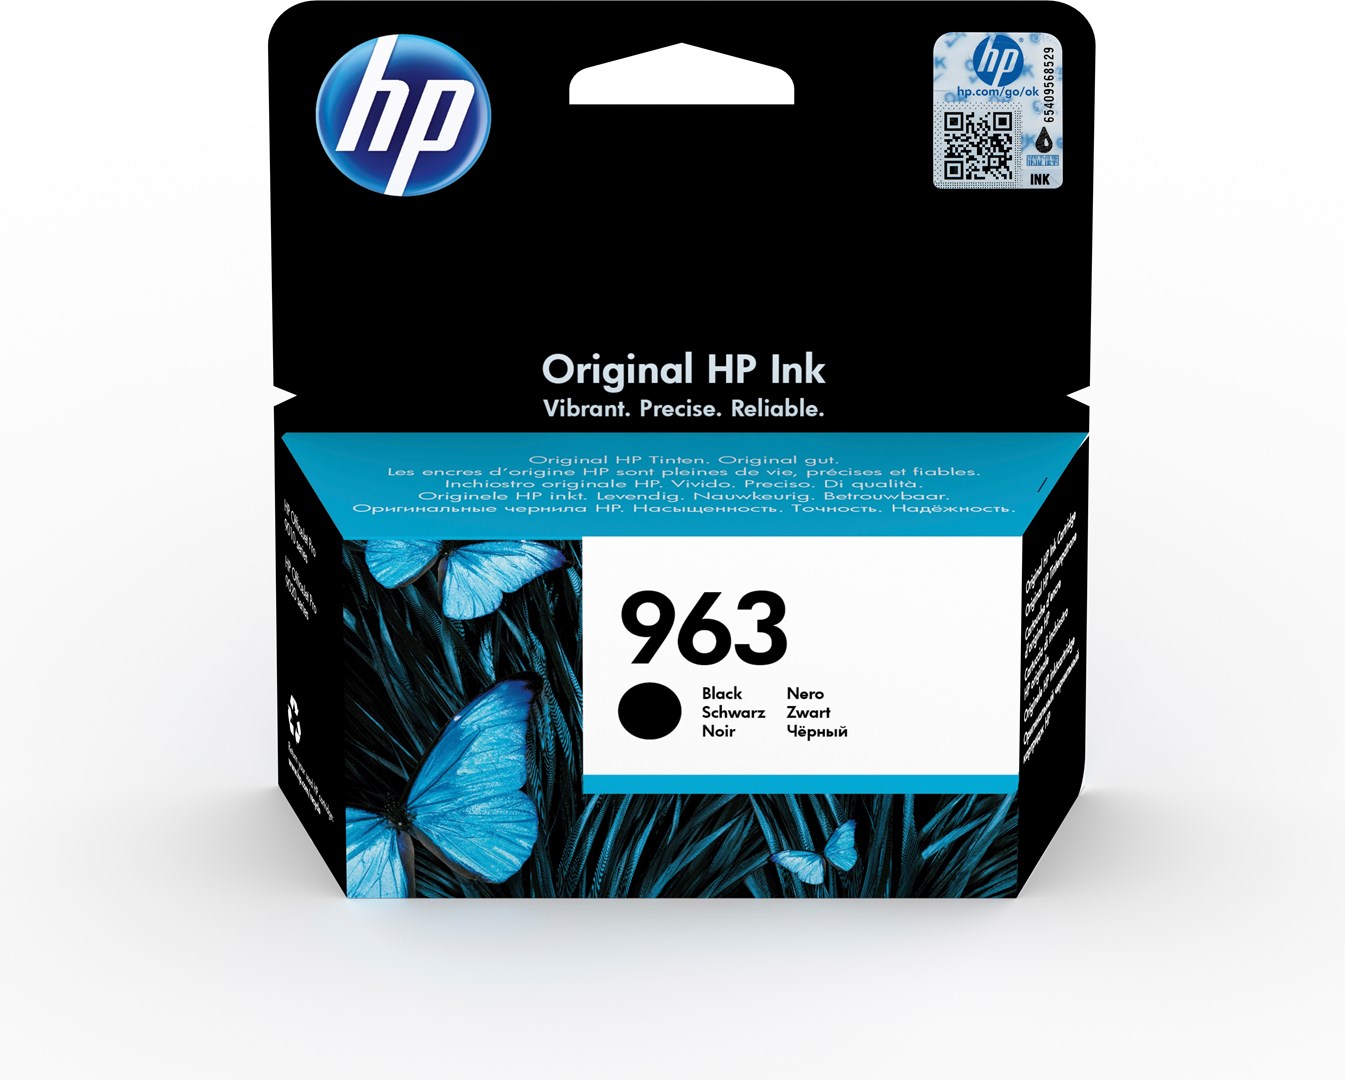 Osta tuote HP 963 alkuperäinen musta mustepatruuna verkkokaupastamme Korhone 10% alennuksella koodilla KORHONE